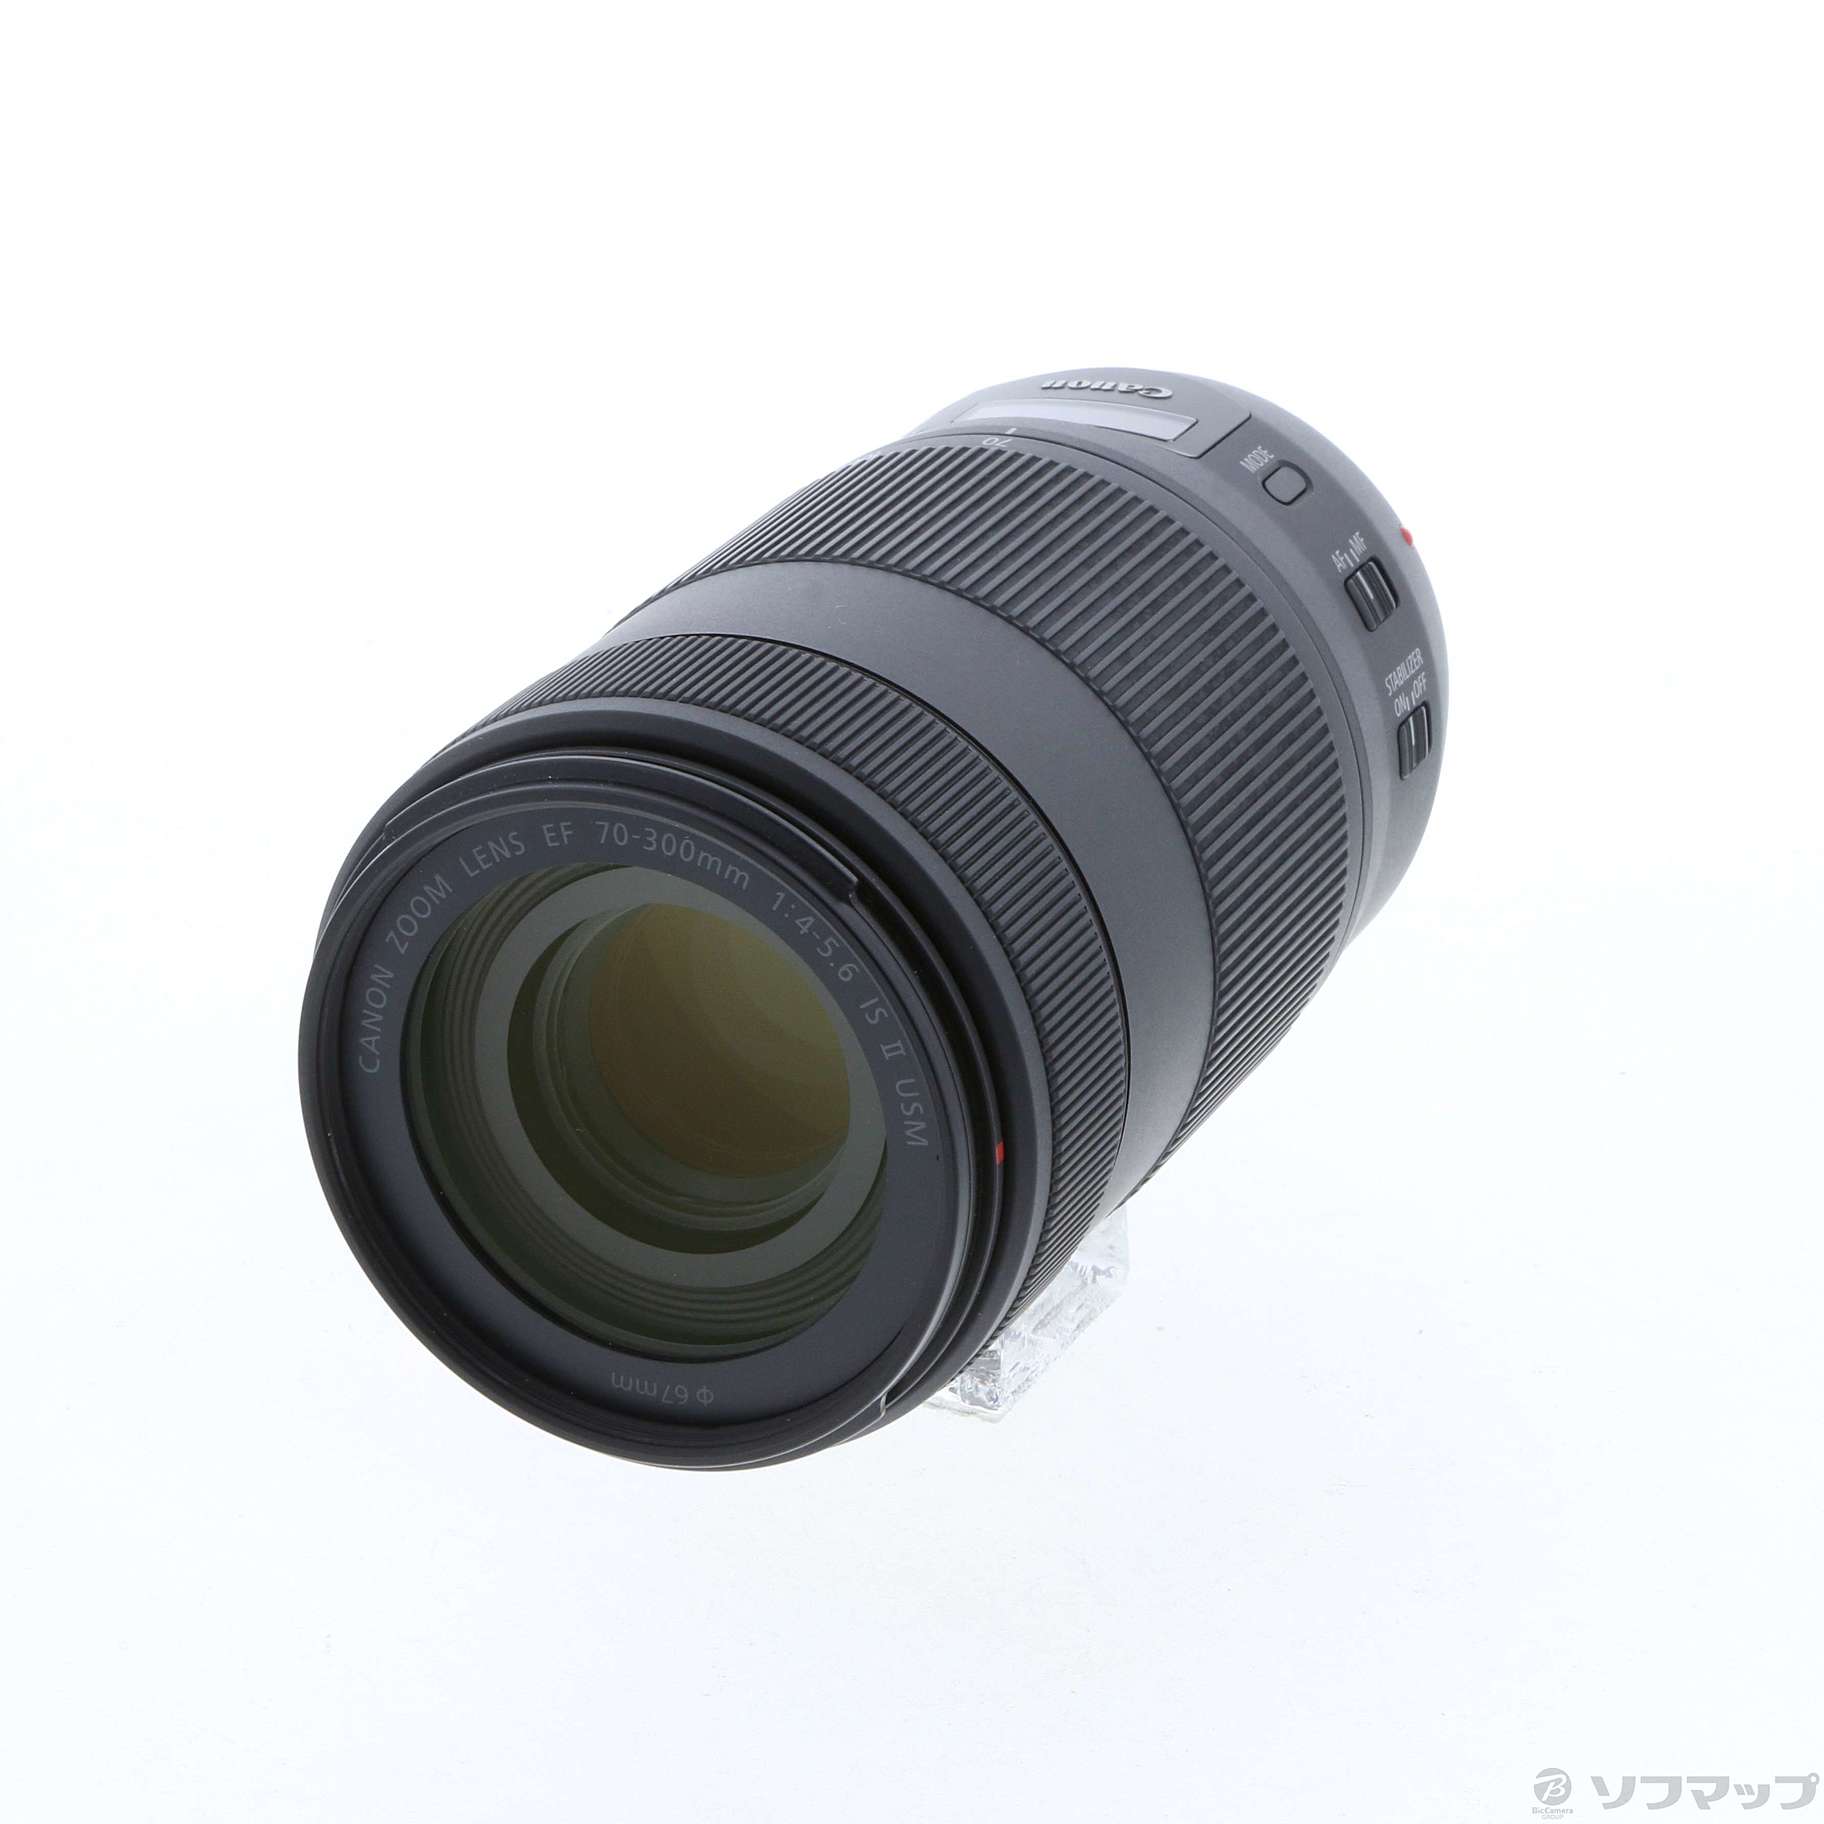 Canon EF70-300mm F4-5.6 IS II USM 望遠ズームレンズ キヤノン - 交換 ...